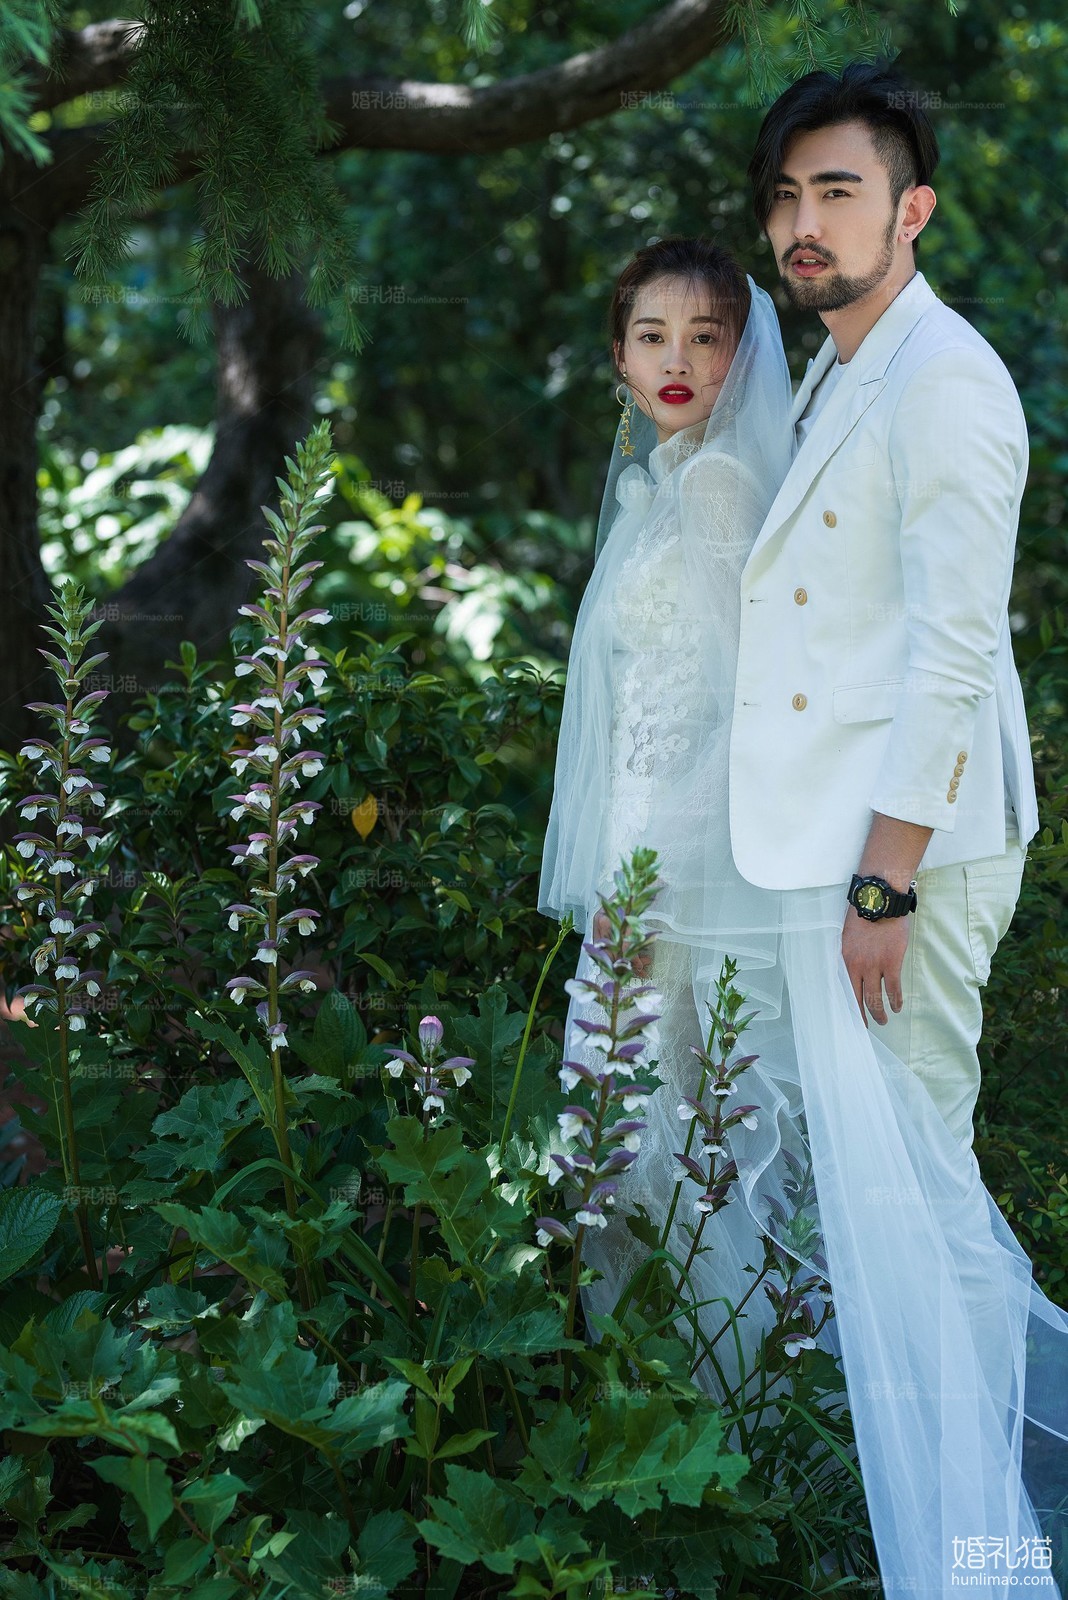 2017年8月上海婚纱照图片,,上海婚纱照,婚纱照图片